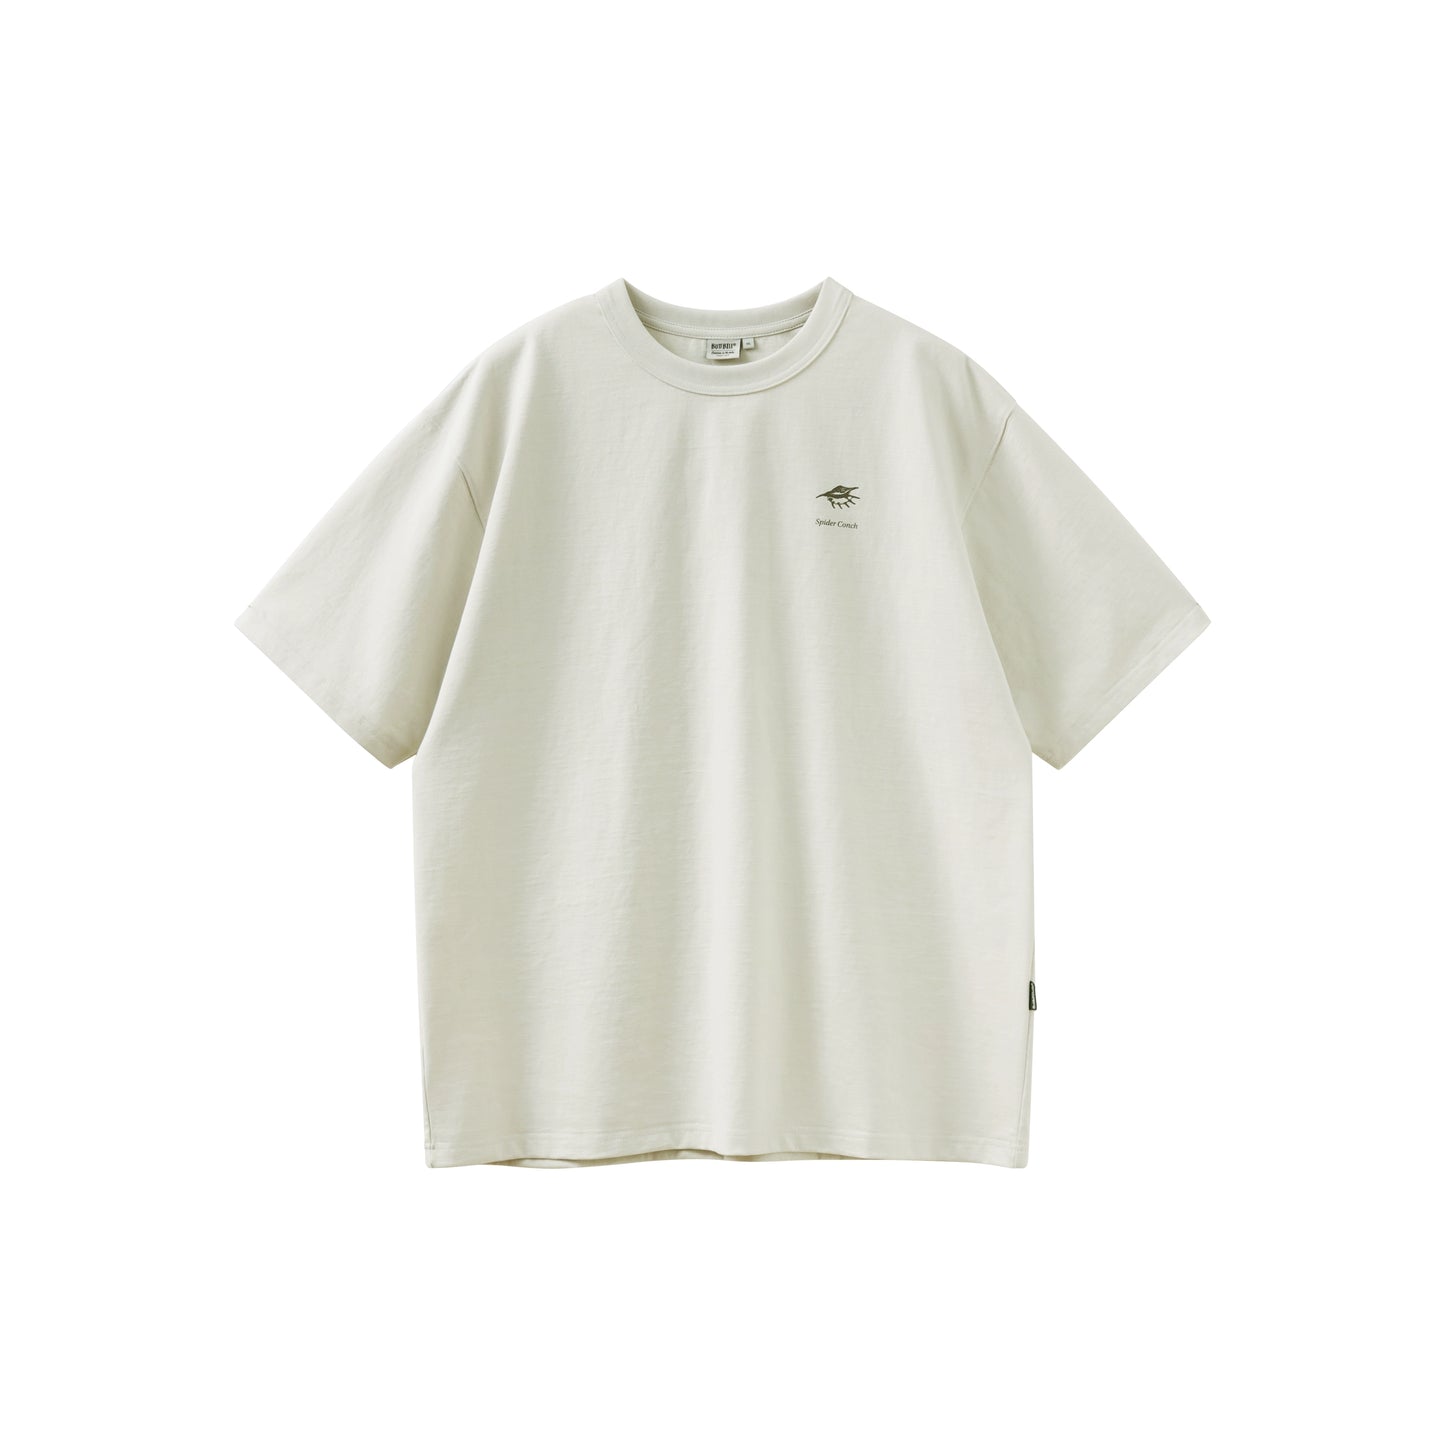 バックプリント半袖Tシャツルーズ B04101